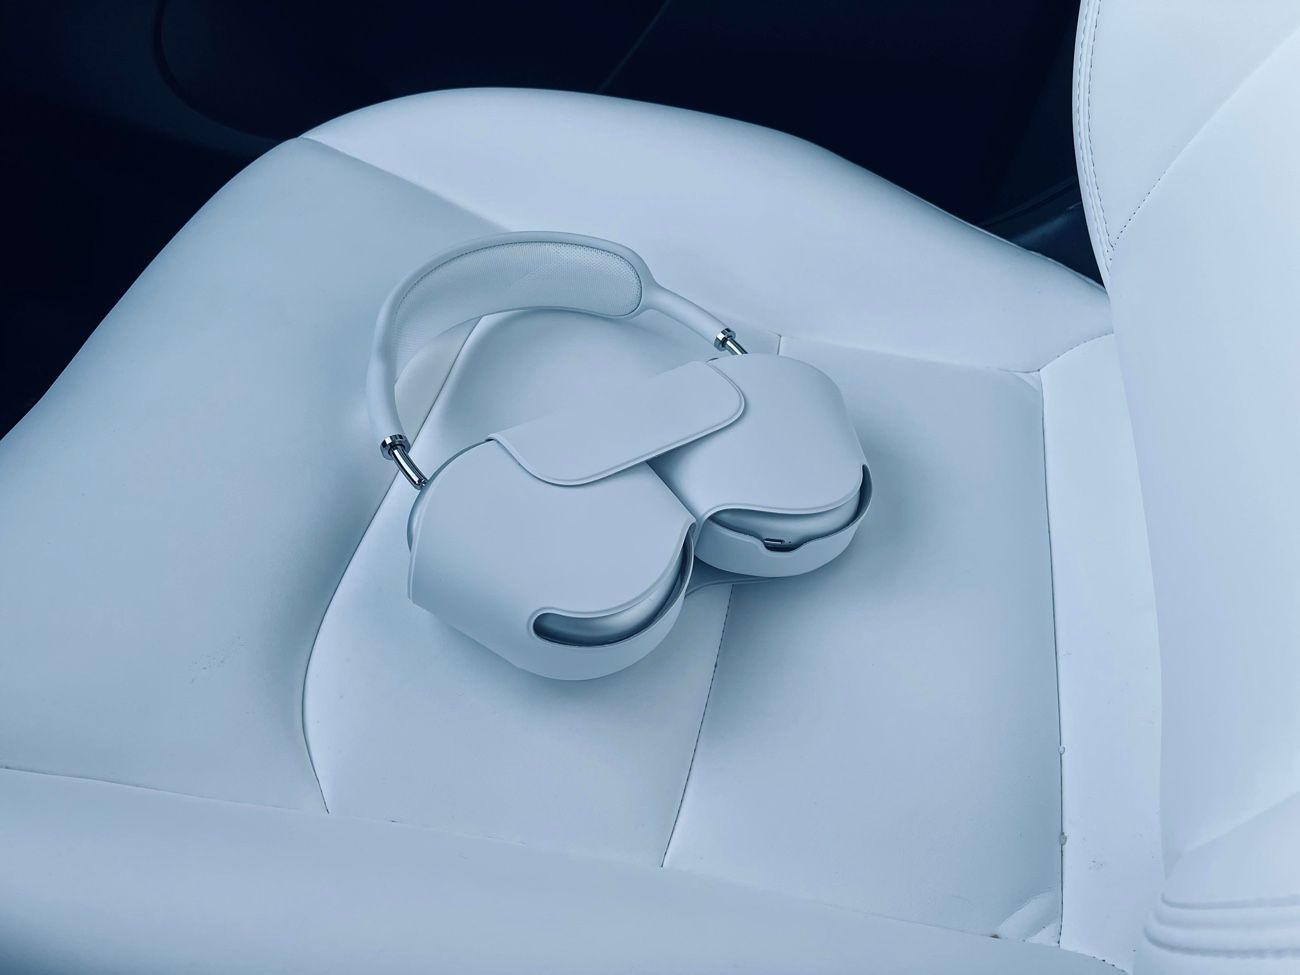 AirPods Max : Apple explique ses choix de design pour le casque et son étui